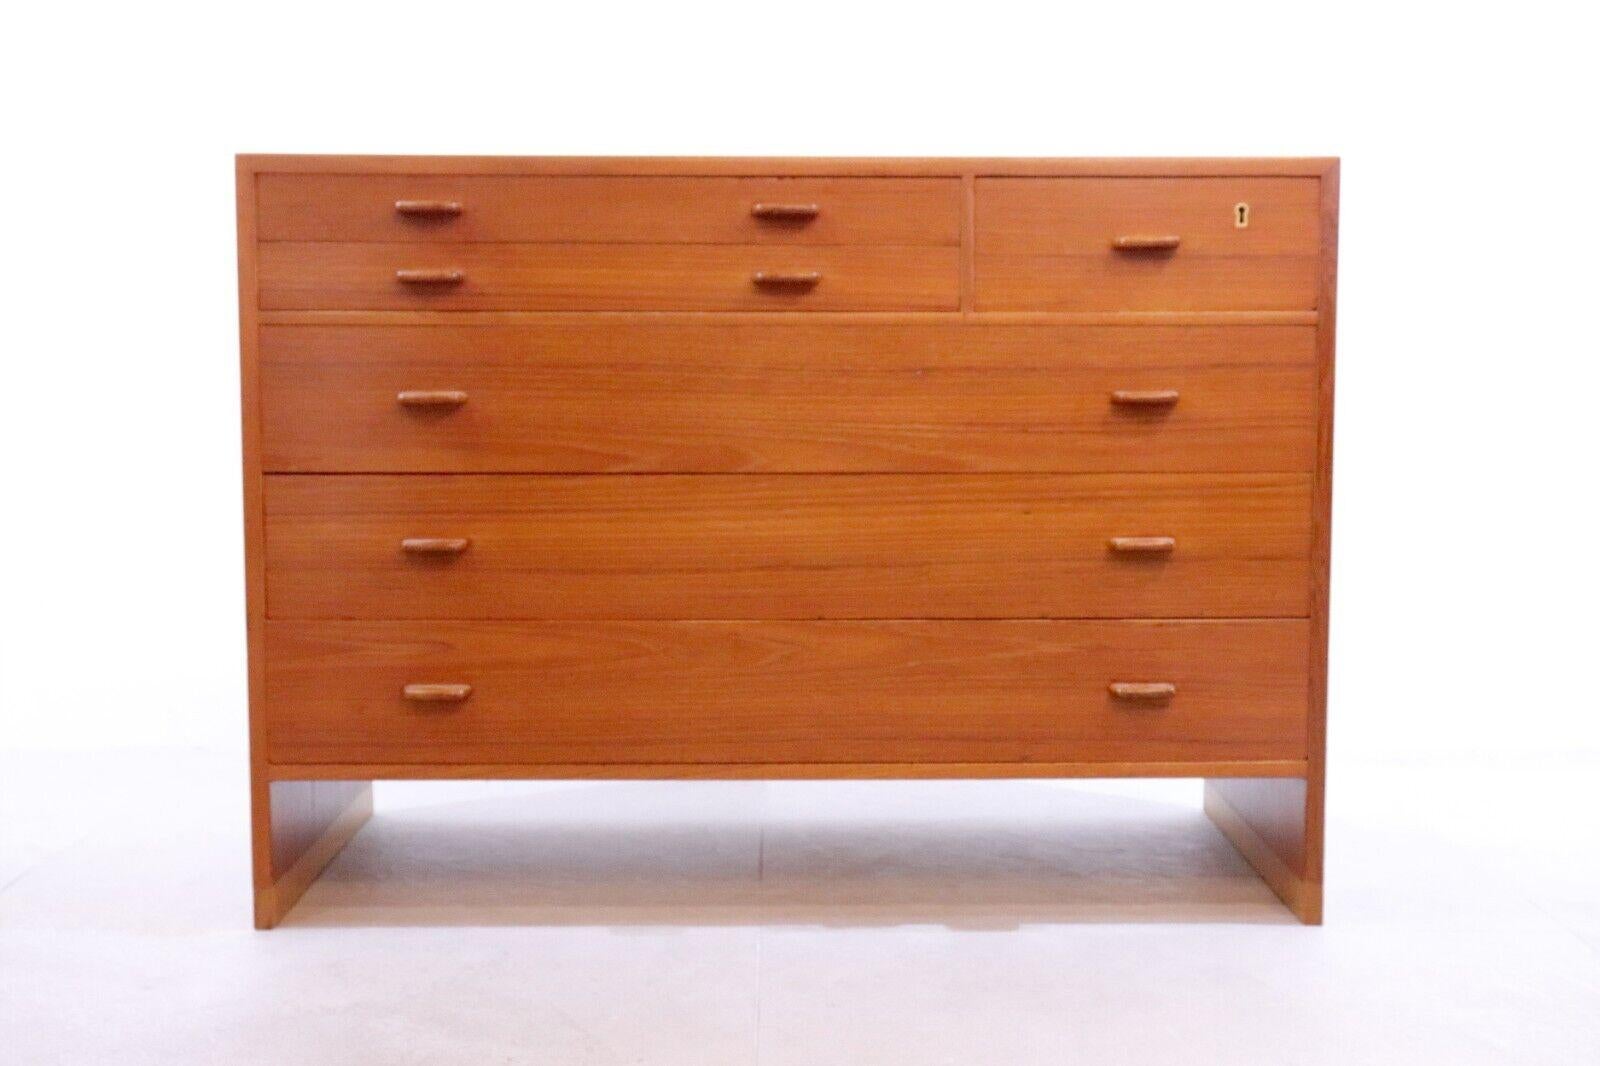 Teakholz-Kommode von Hans Wegner für Ry Møbler, 1955; ein einfaches, robustes und ästhetisches Design. Die warme Holzfarbe passt zu jedem Interieur und ist ideal für ein Schlafzimmer, ein Büro oder sogar einen Konsolentisch. Mit Stauraum für